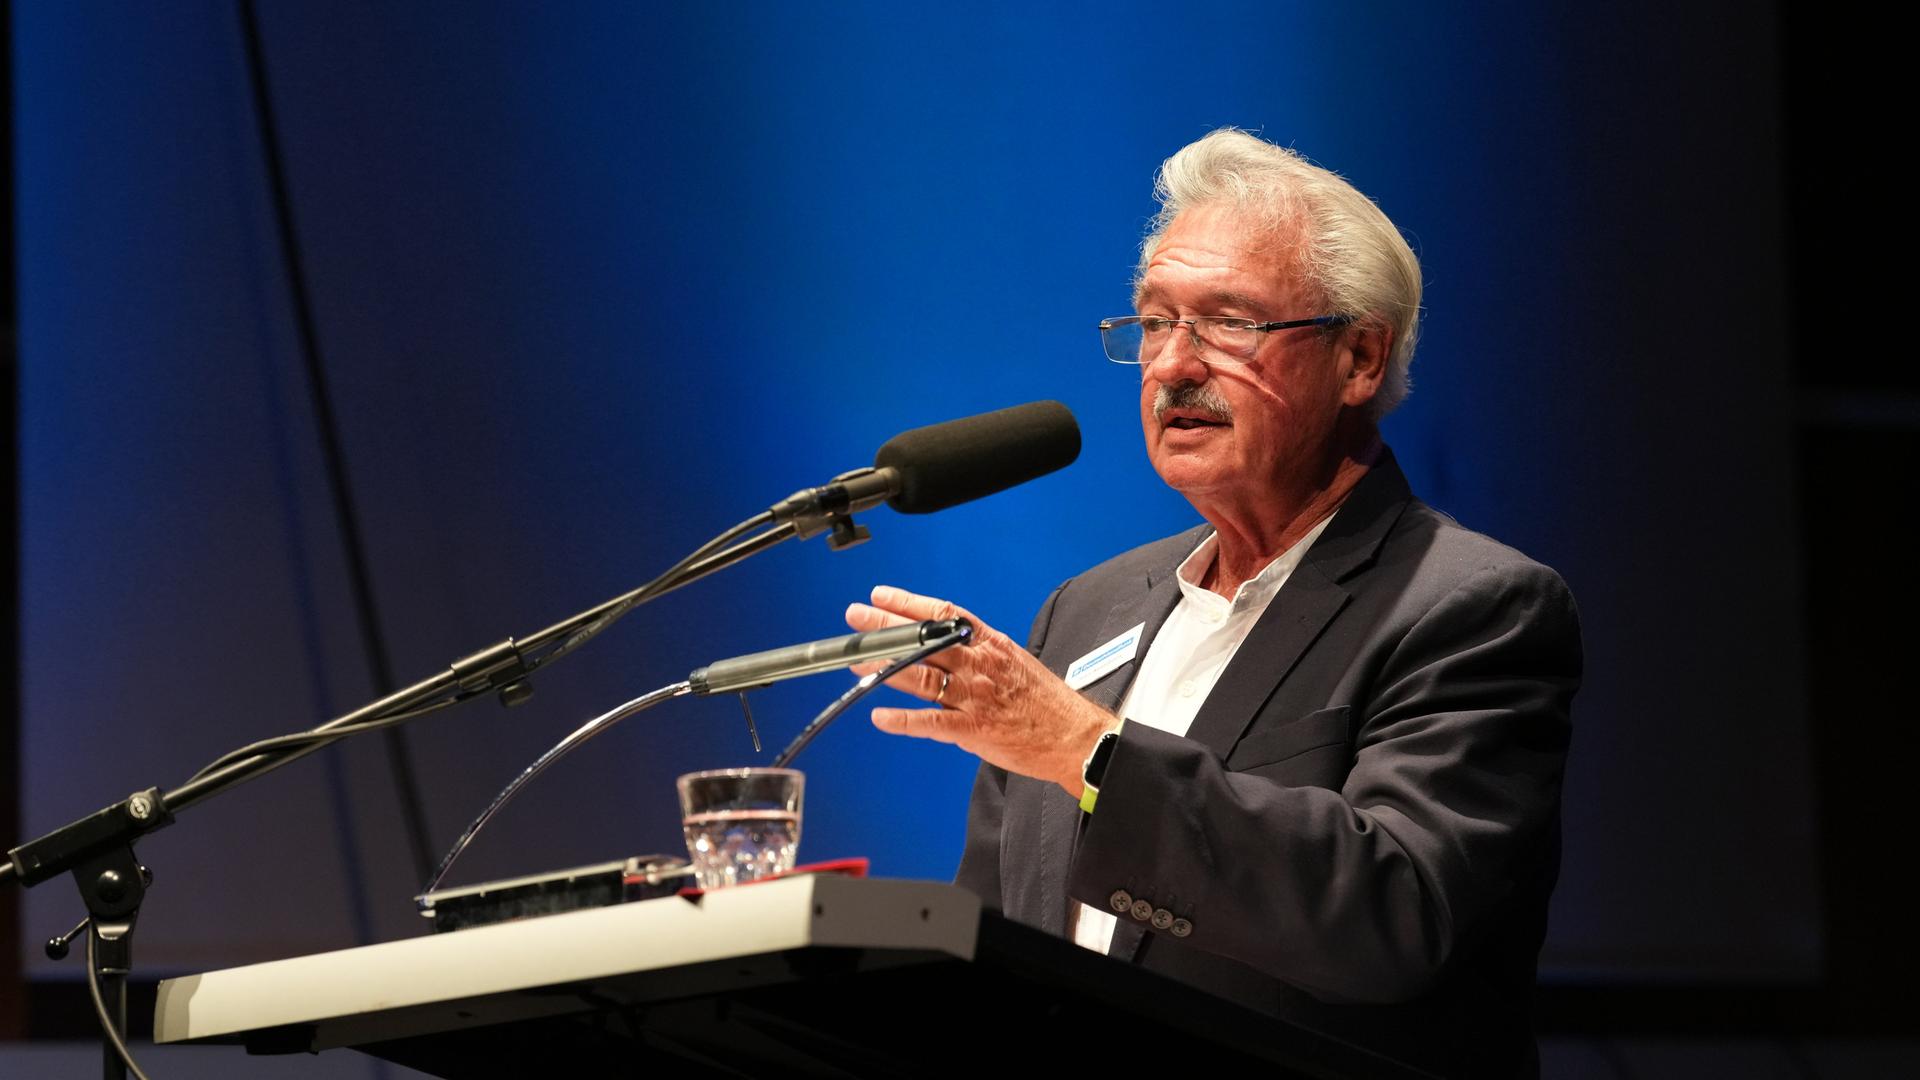 Jean Asselborn spricht auf dem Podium der 1. Europakonferenz des Deutschlandfunks.